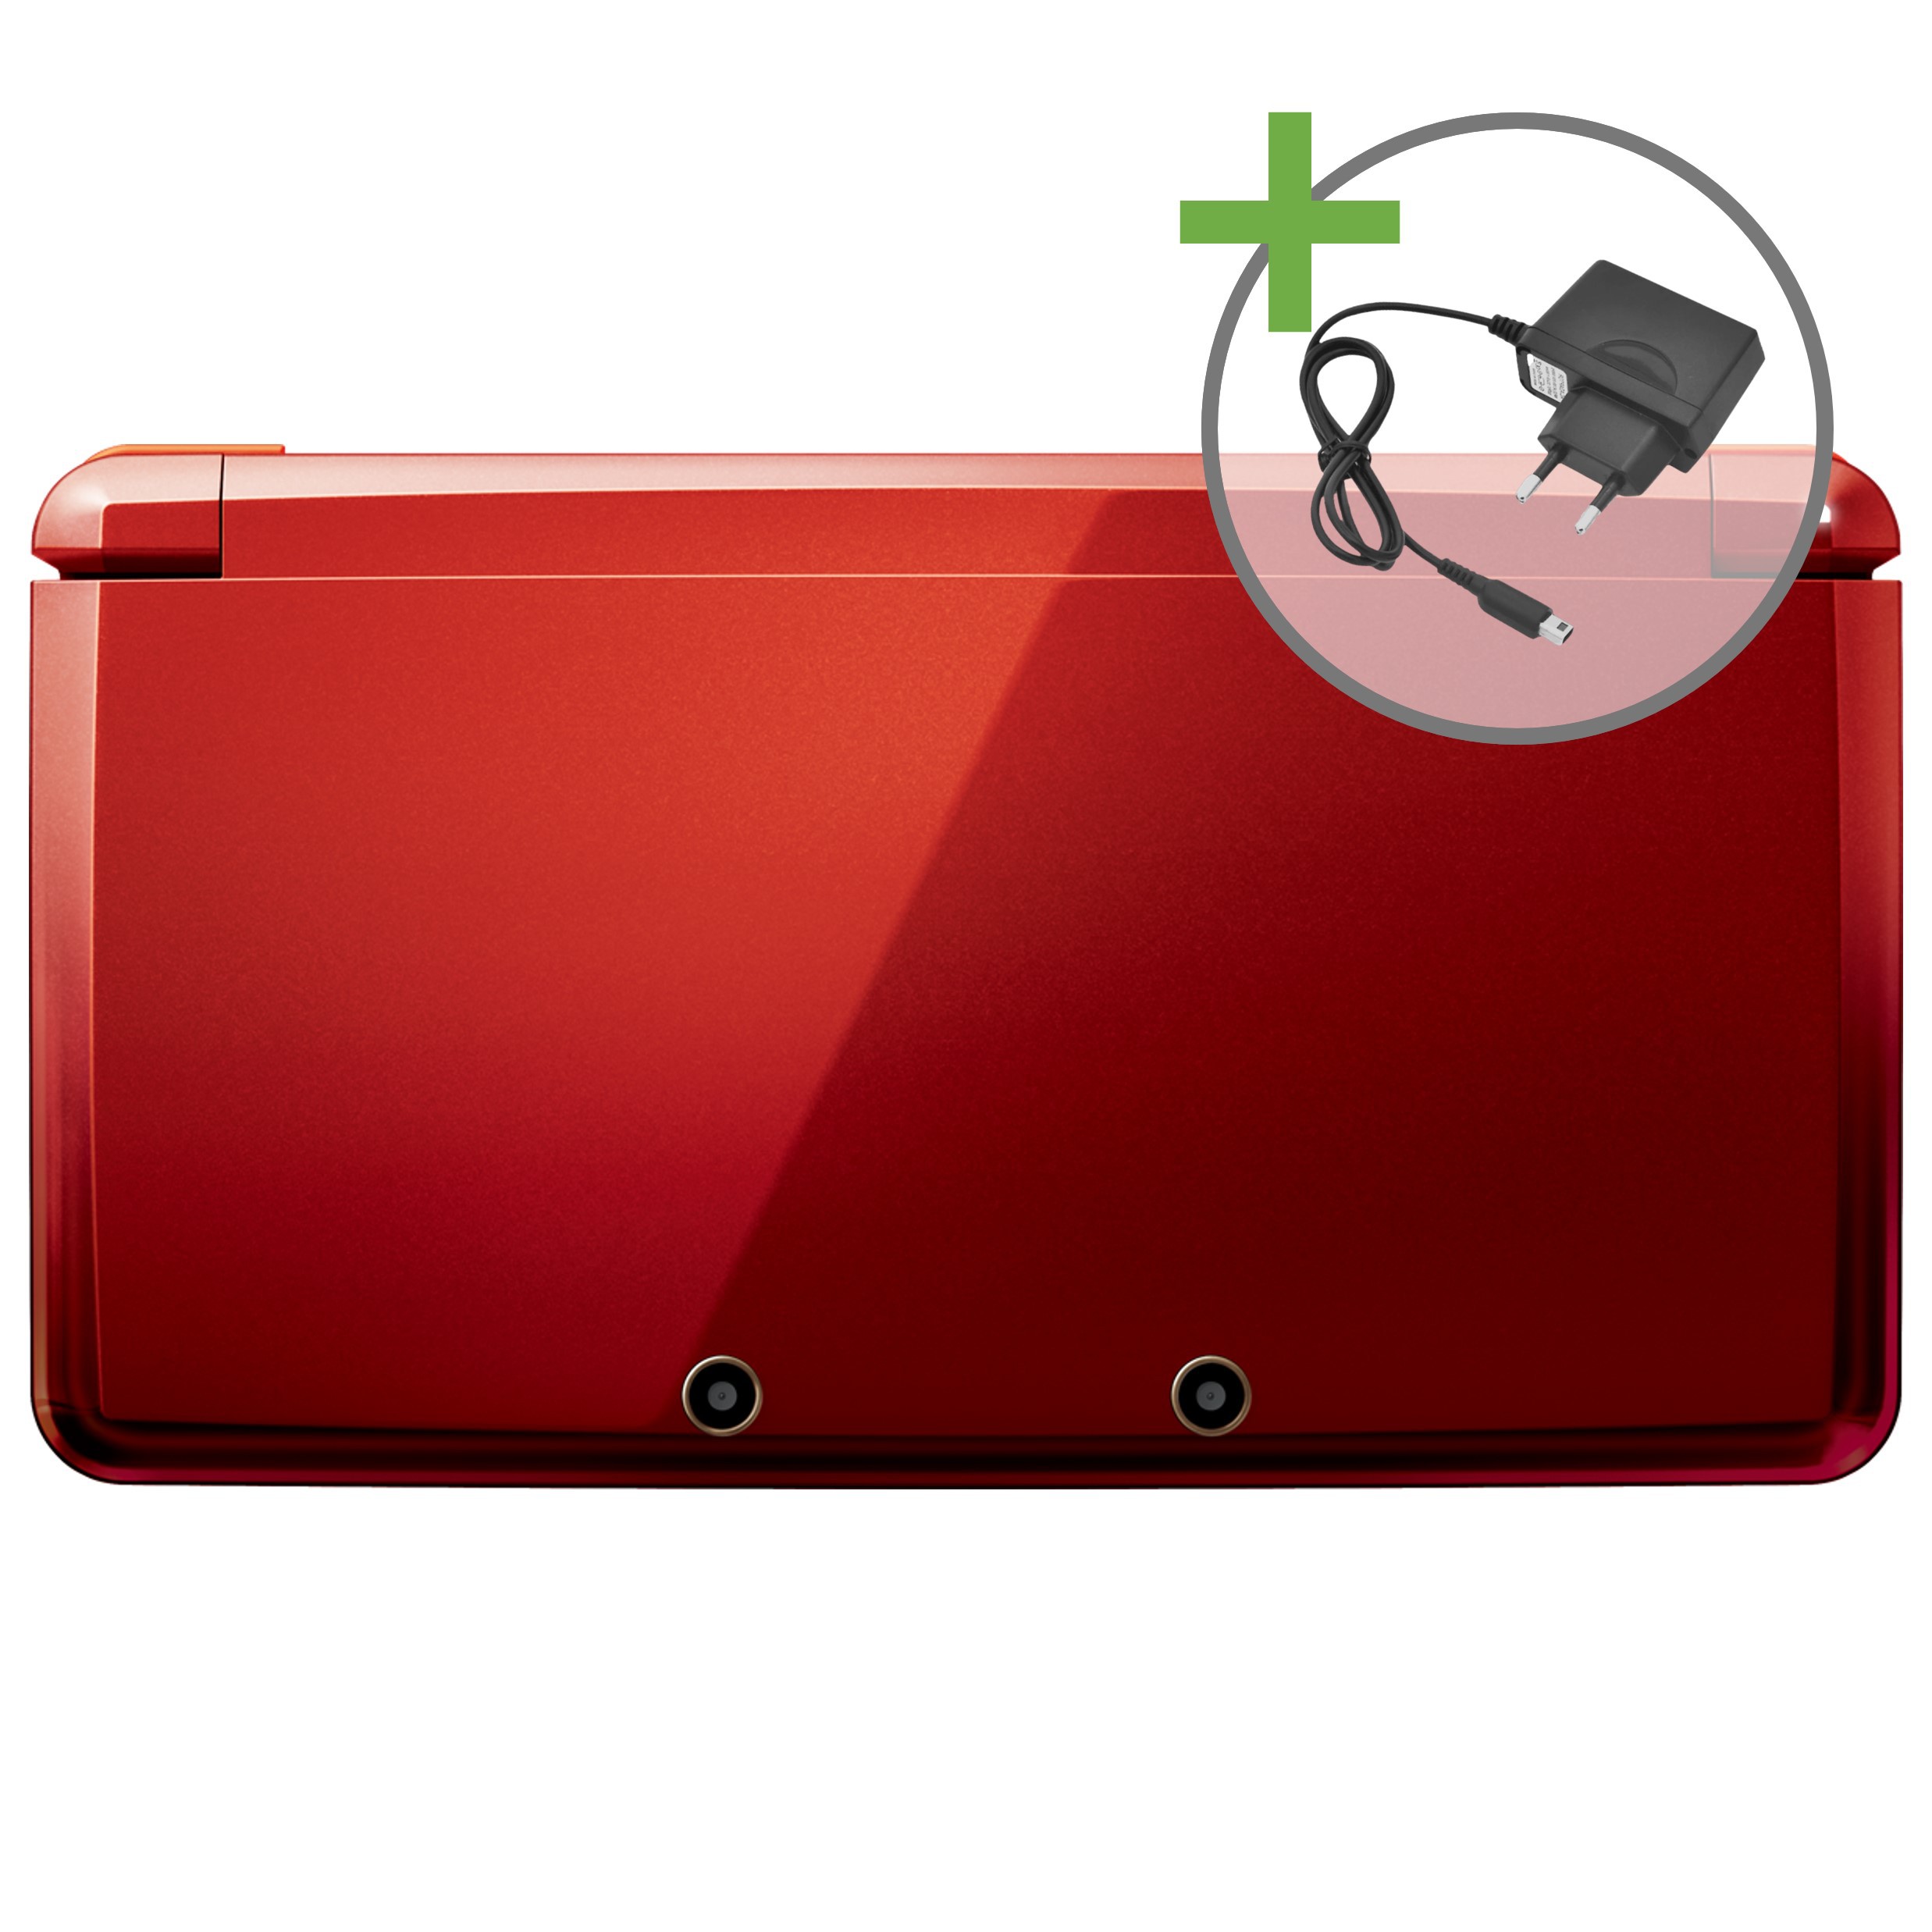 Nintendo 3DS - Metallic Red [Complete] | Nintendo 3DS Hardware | RetroNintendoKopen.nl